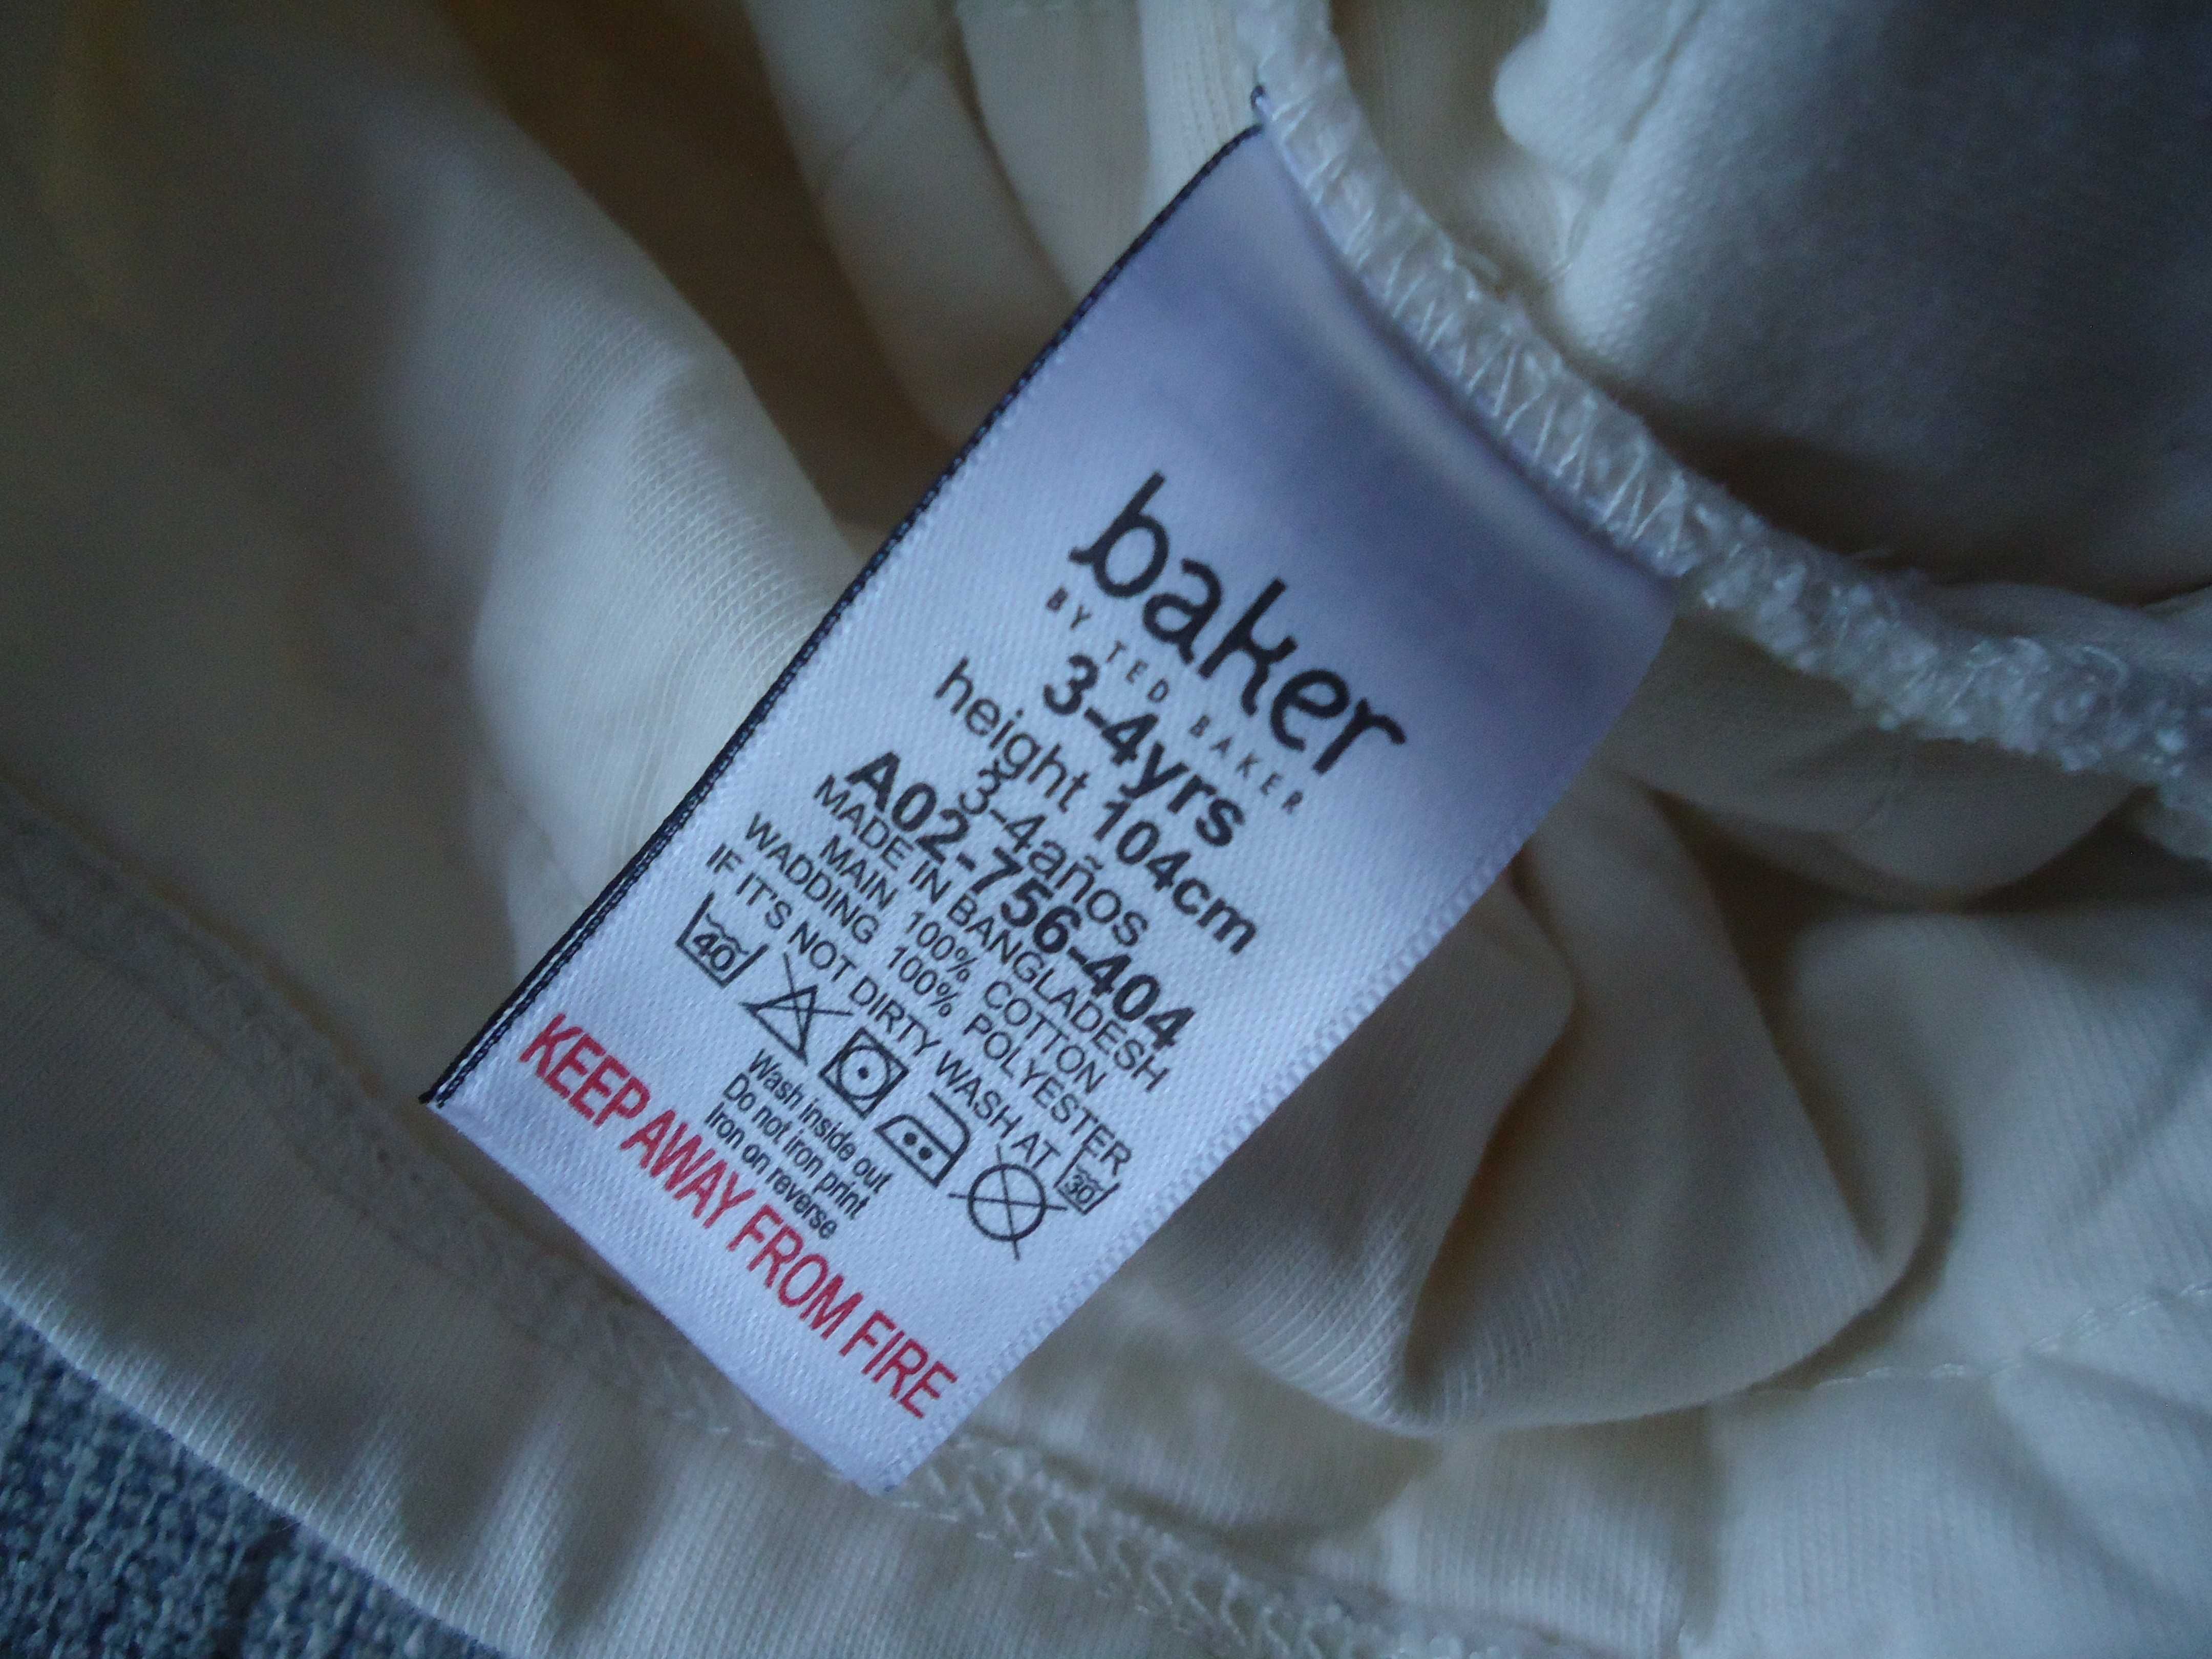 Baker By Ted Baker Bluza dla dziewczynki kremowa grubsza 3-4lata 104cm